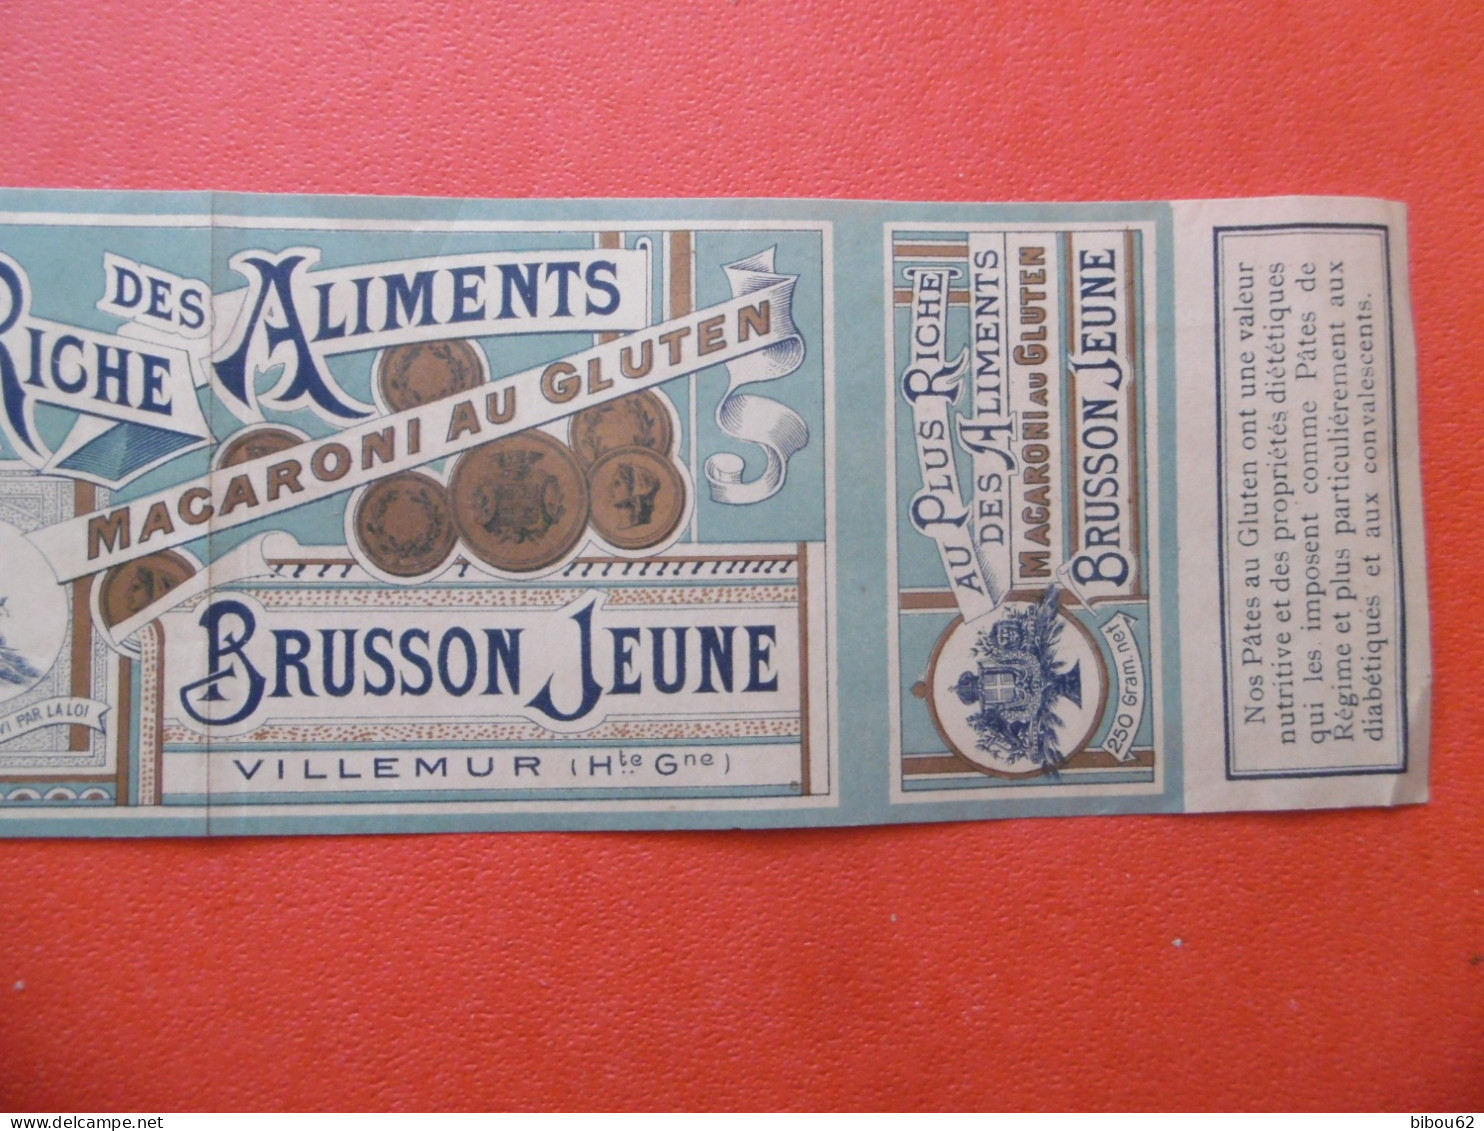 VILLEMUR  ( 31 ) Bande Publicitaire D'habillage De Boite - BRUSSON  Jeune - Macaroni Au Gluten - 1900 - Levensmiddelen